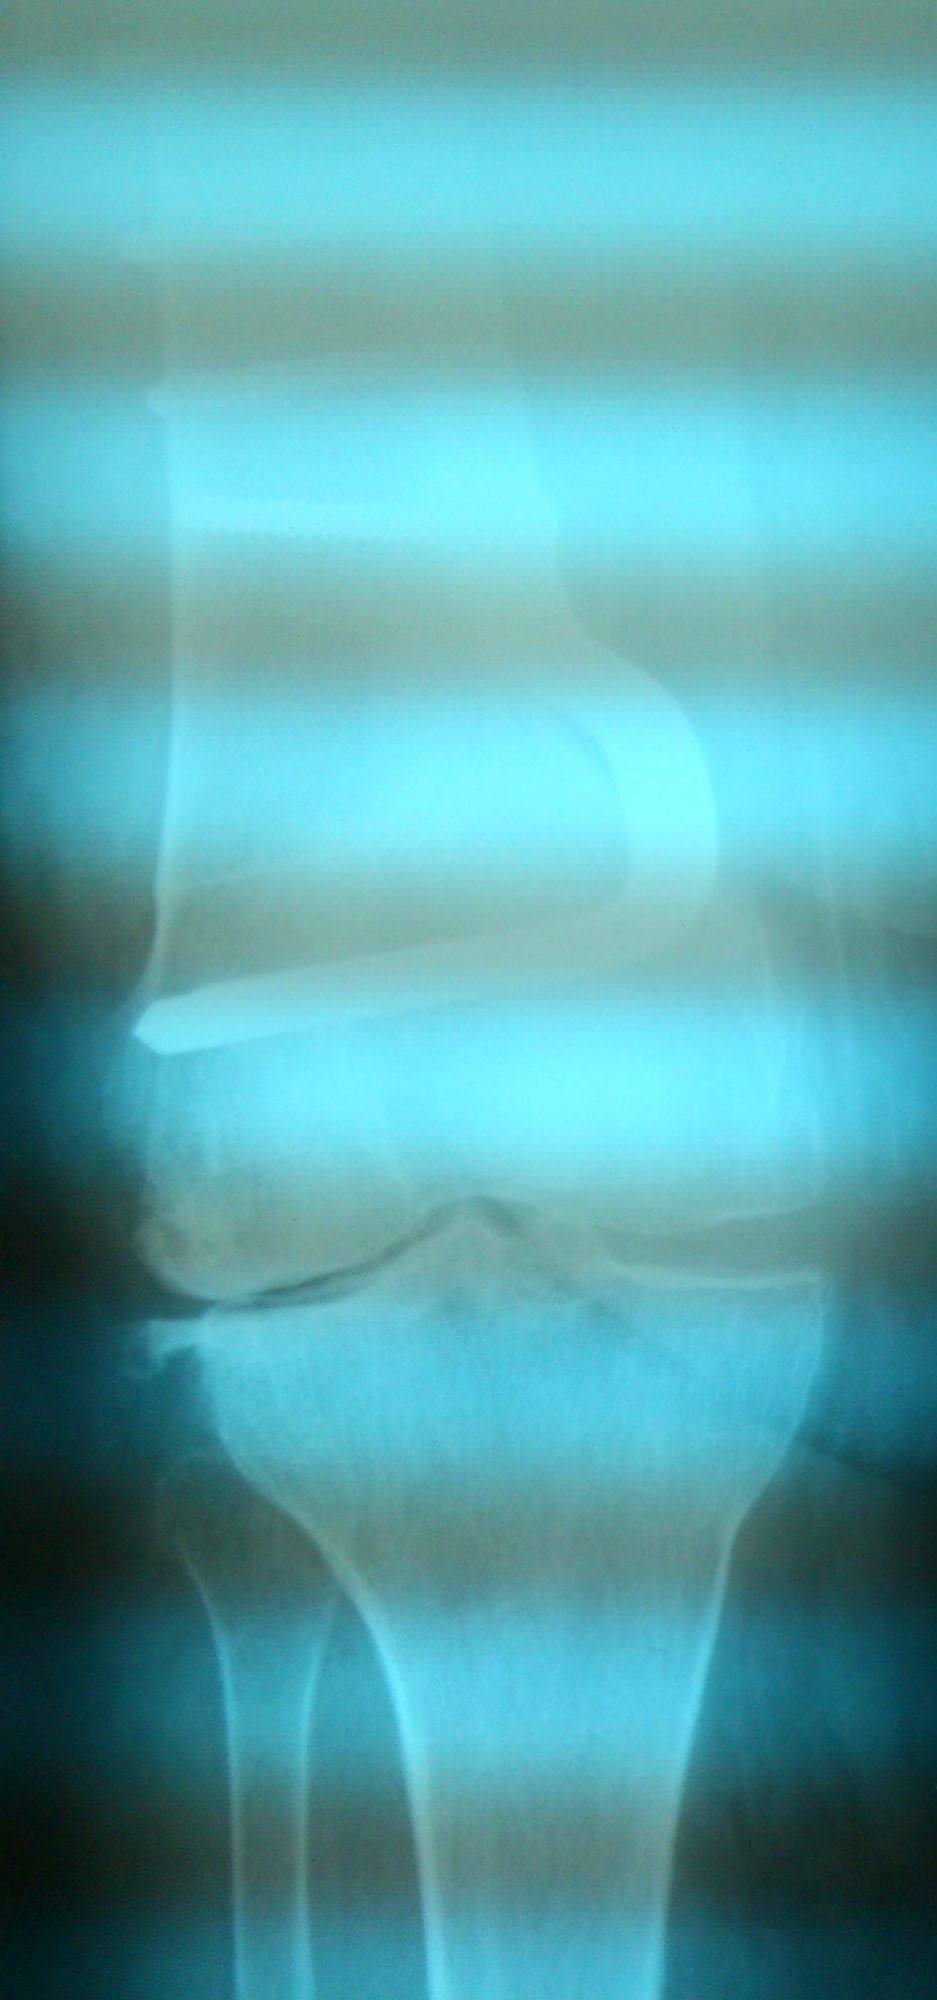 Δύσκολη ολική αρθροπλαστική σε γόνατο που έχει χειρουργηθεί για υπερκονδύλιο κάταγμα - Φωτο1 μετά